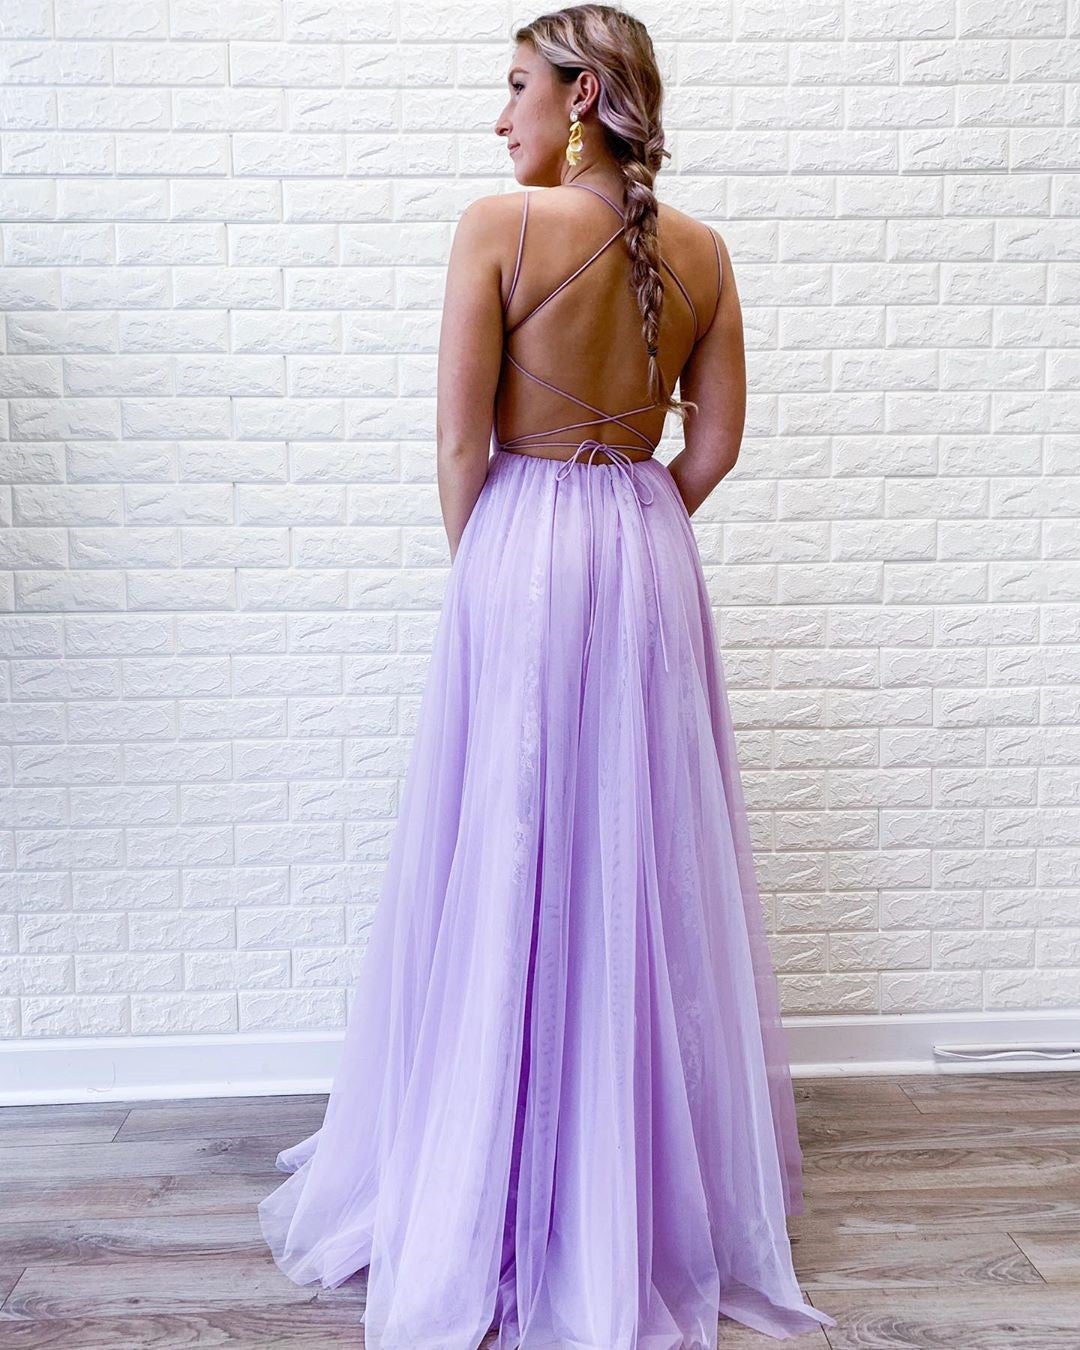 vigocouture-Lavender Lace Applique Prom Dress 20373-Prom Dresses-vigocouture-